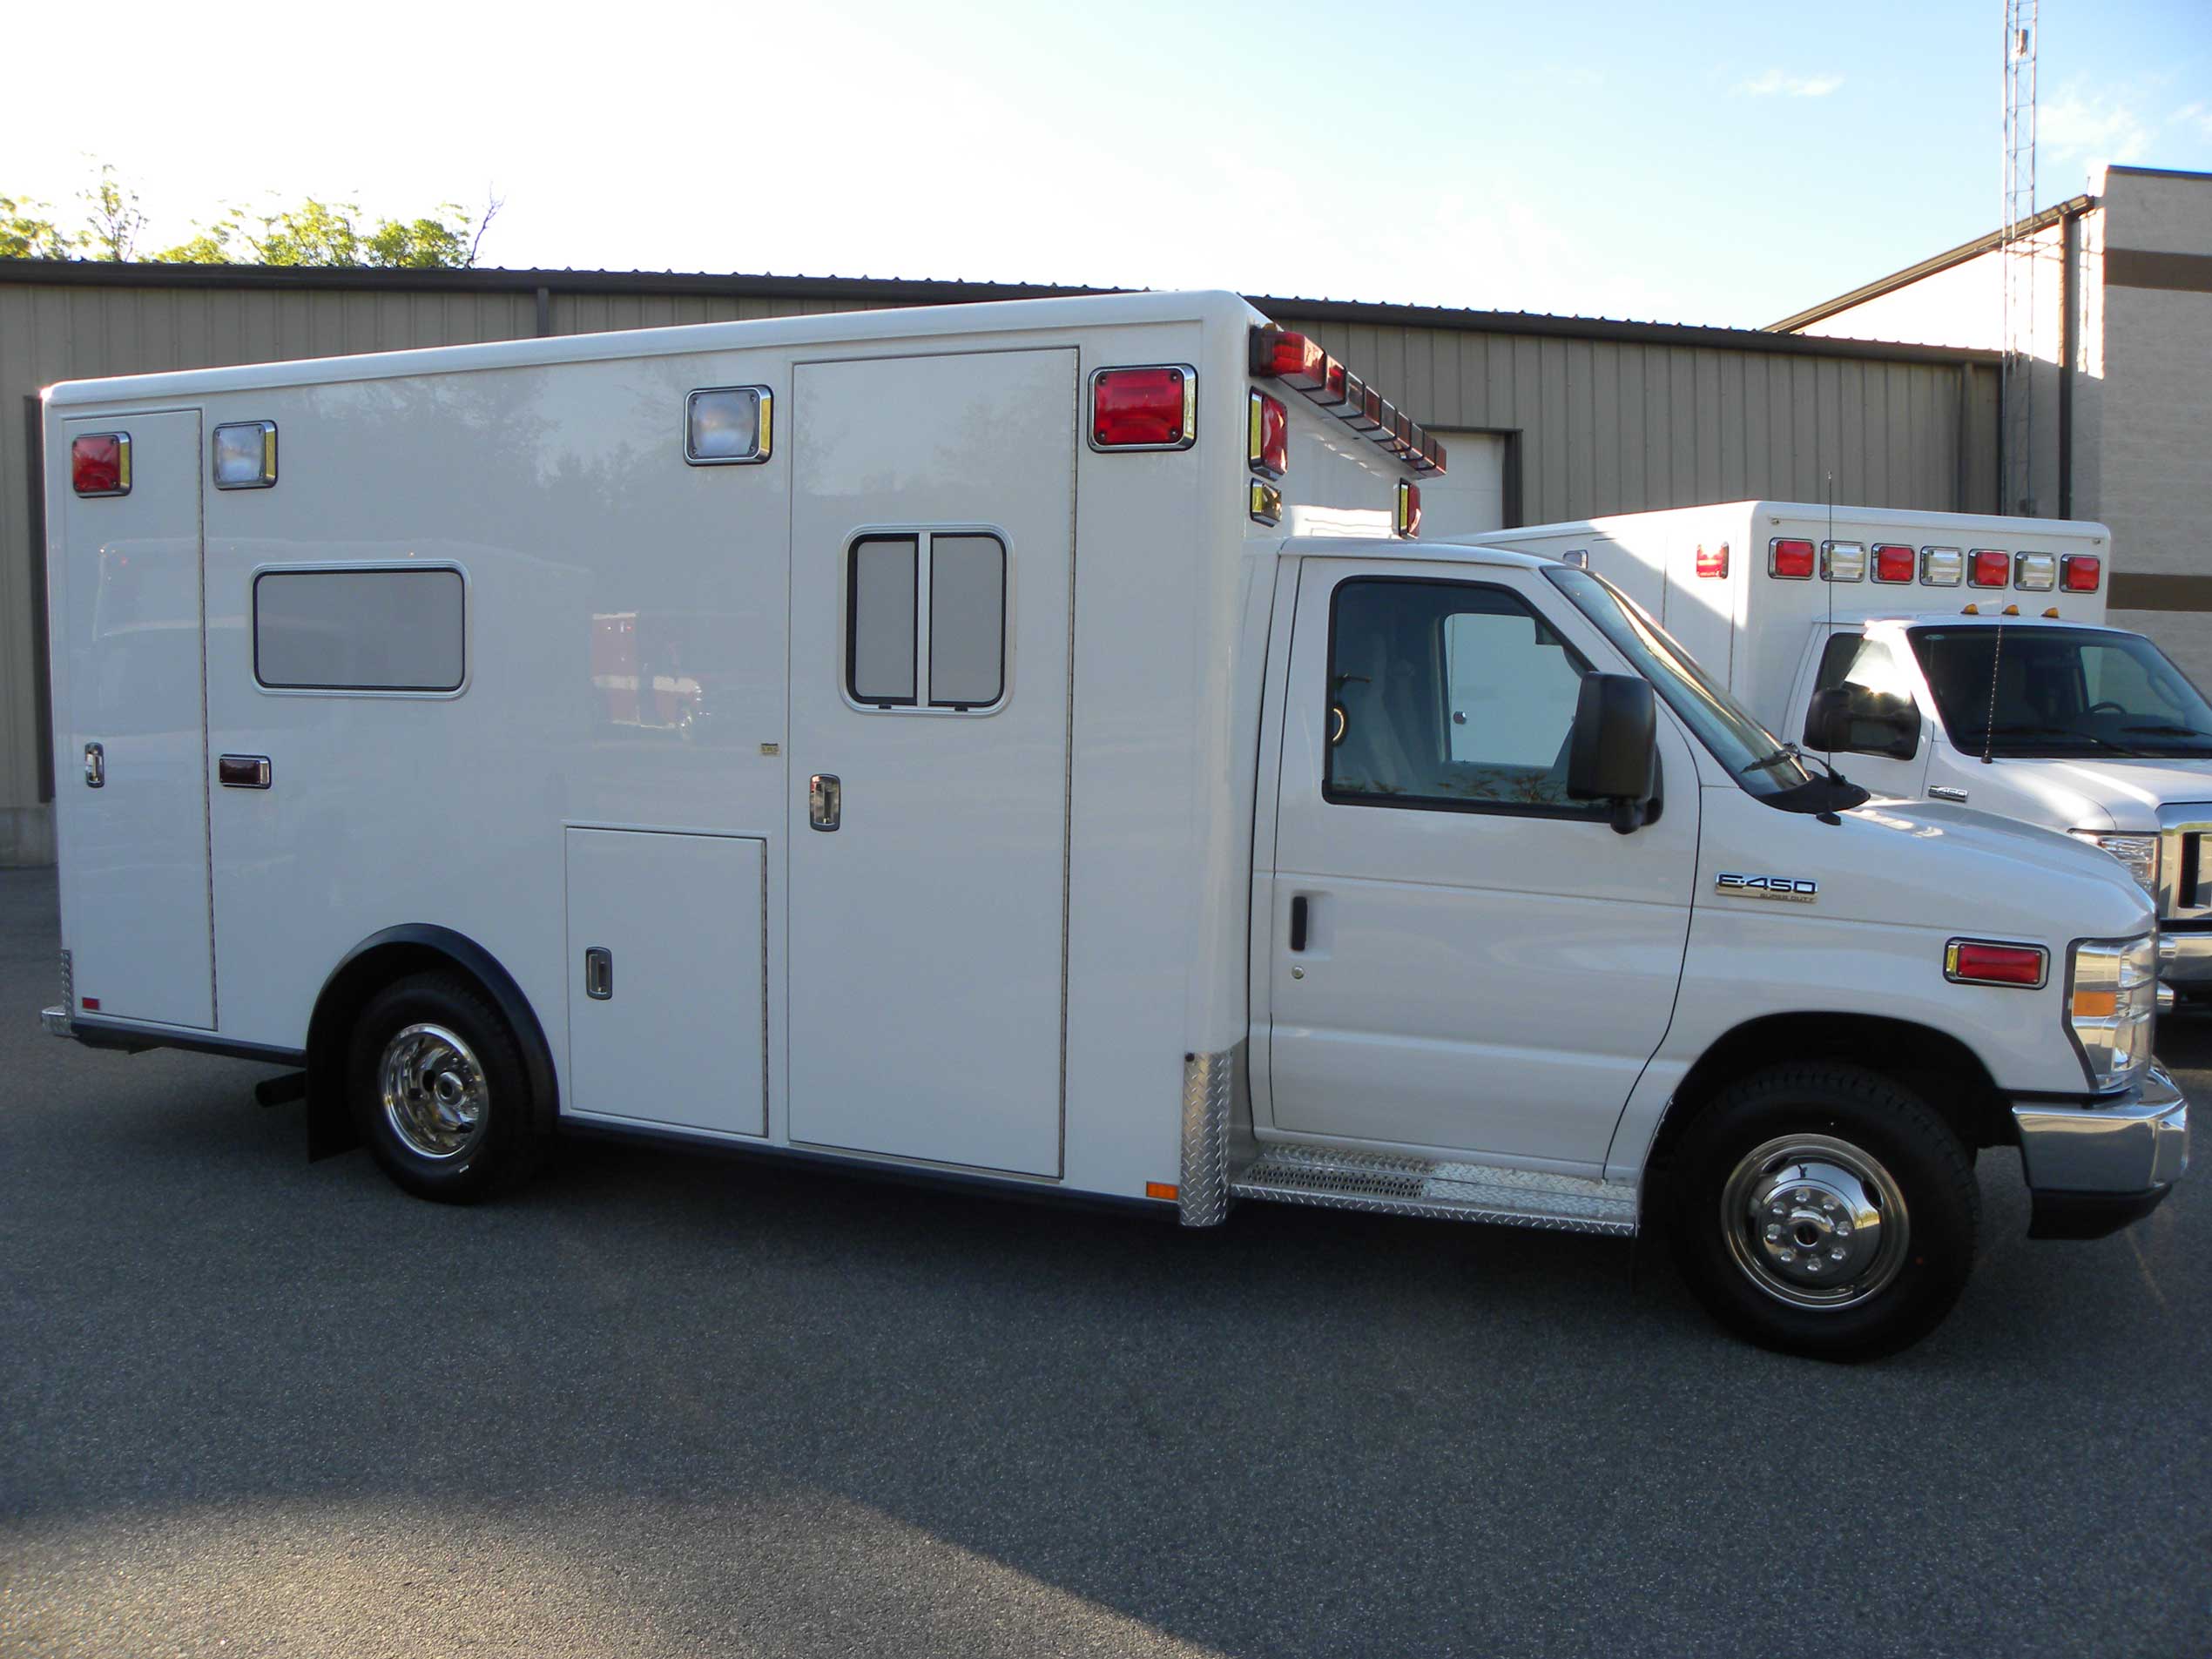 United Ambulance, Inc. Lewiston, ME - Horton Ford Type III Ambulance